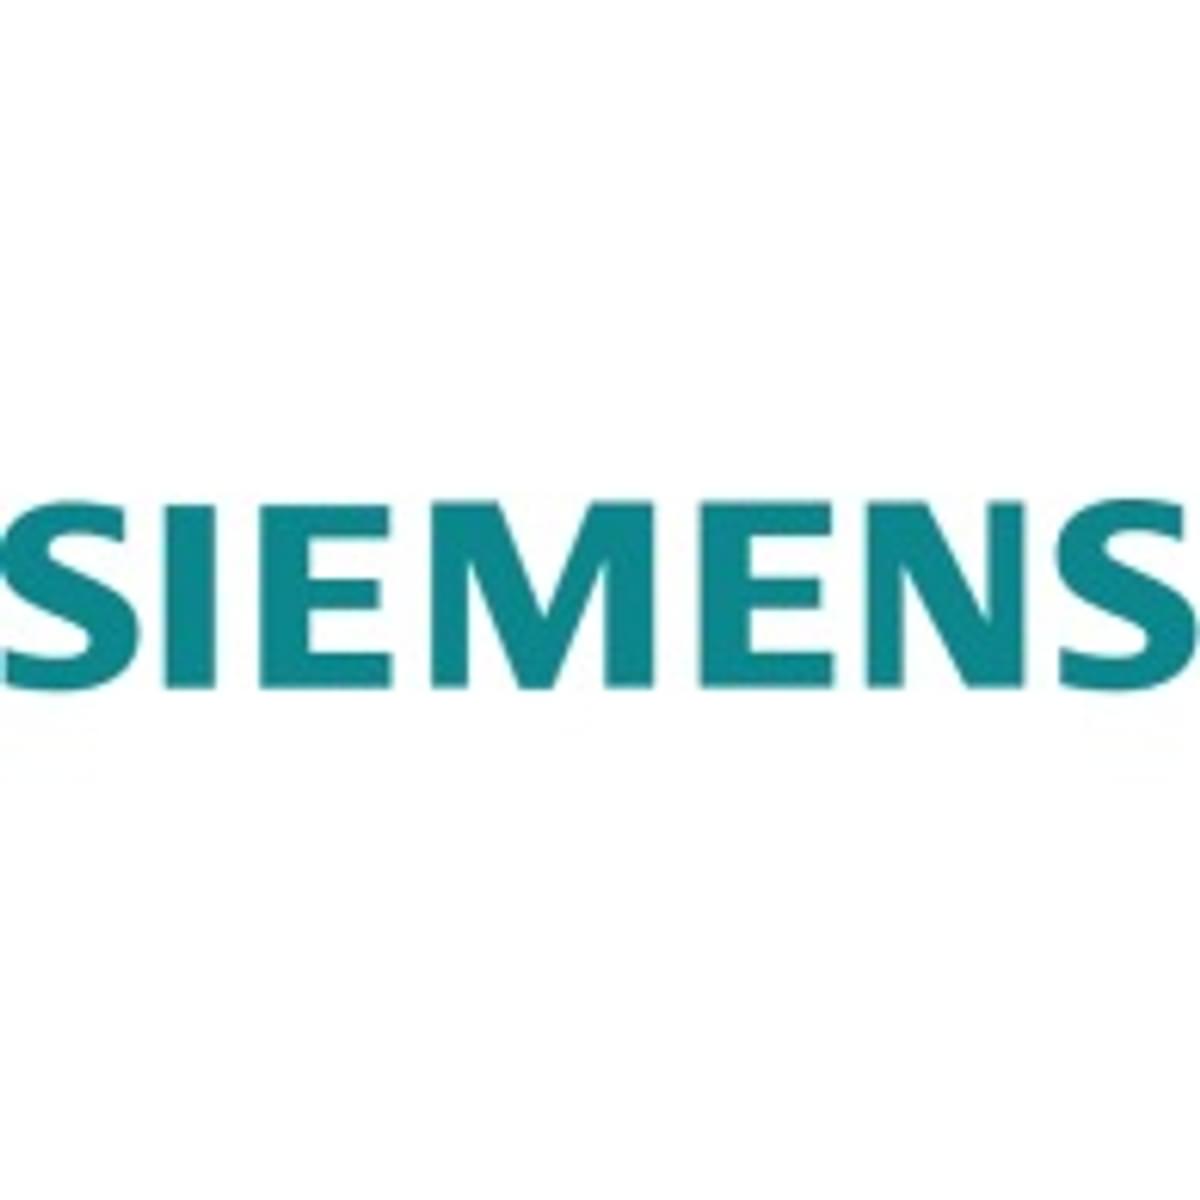 Siemens kondigt overname Culgi aan image